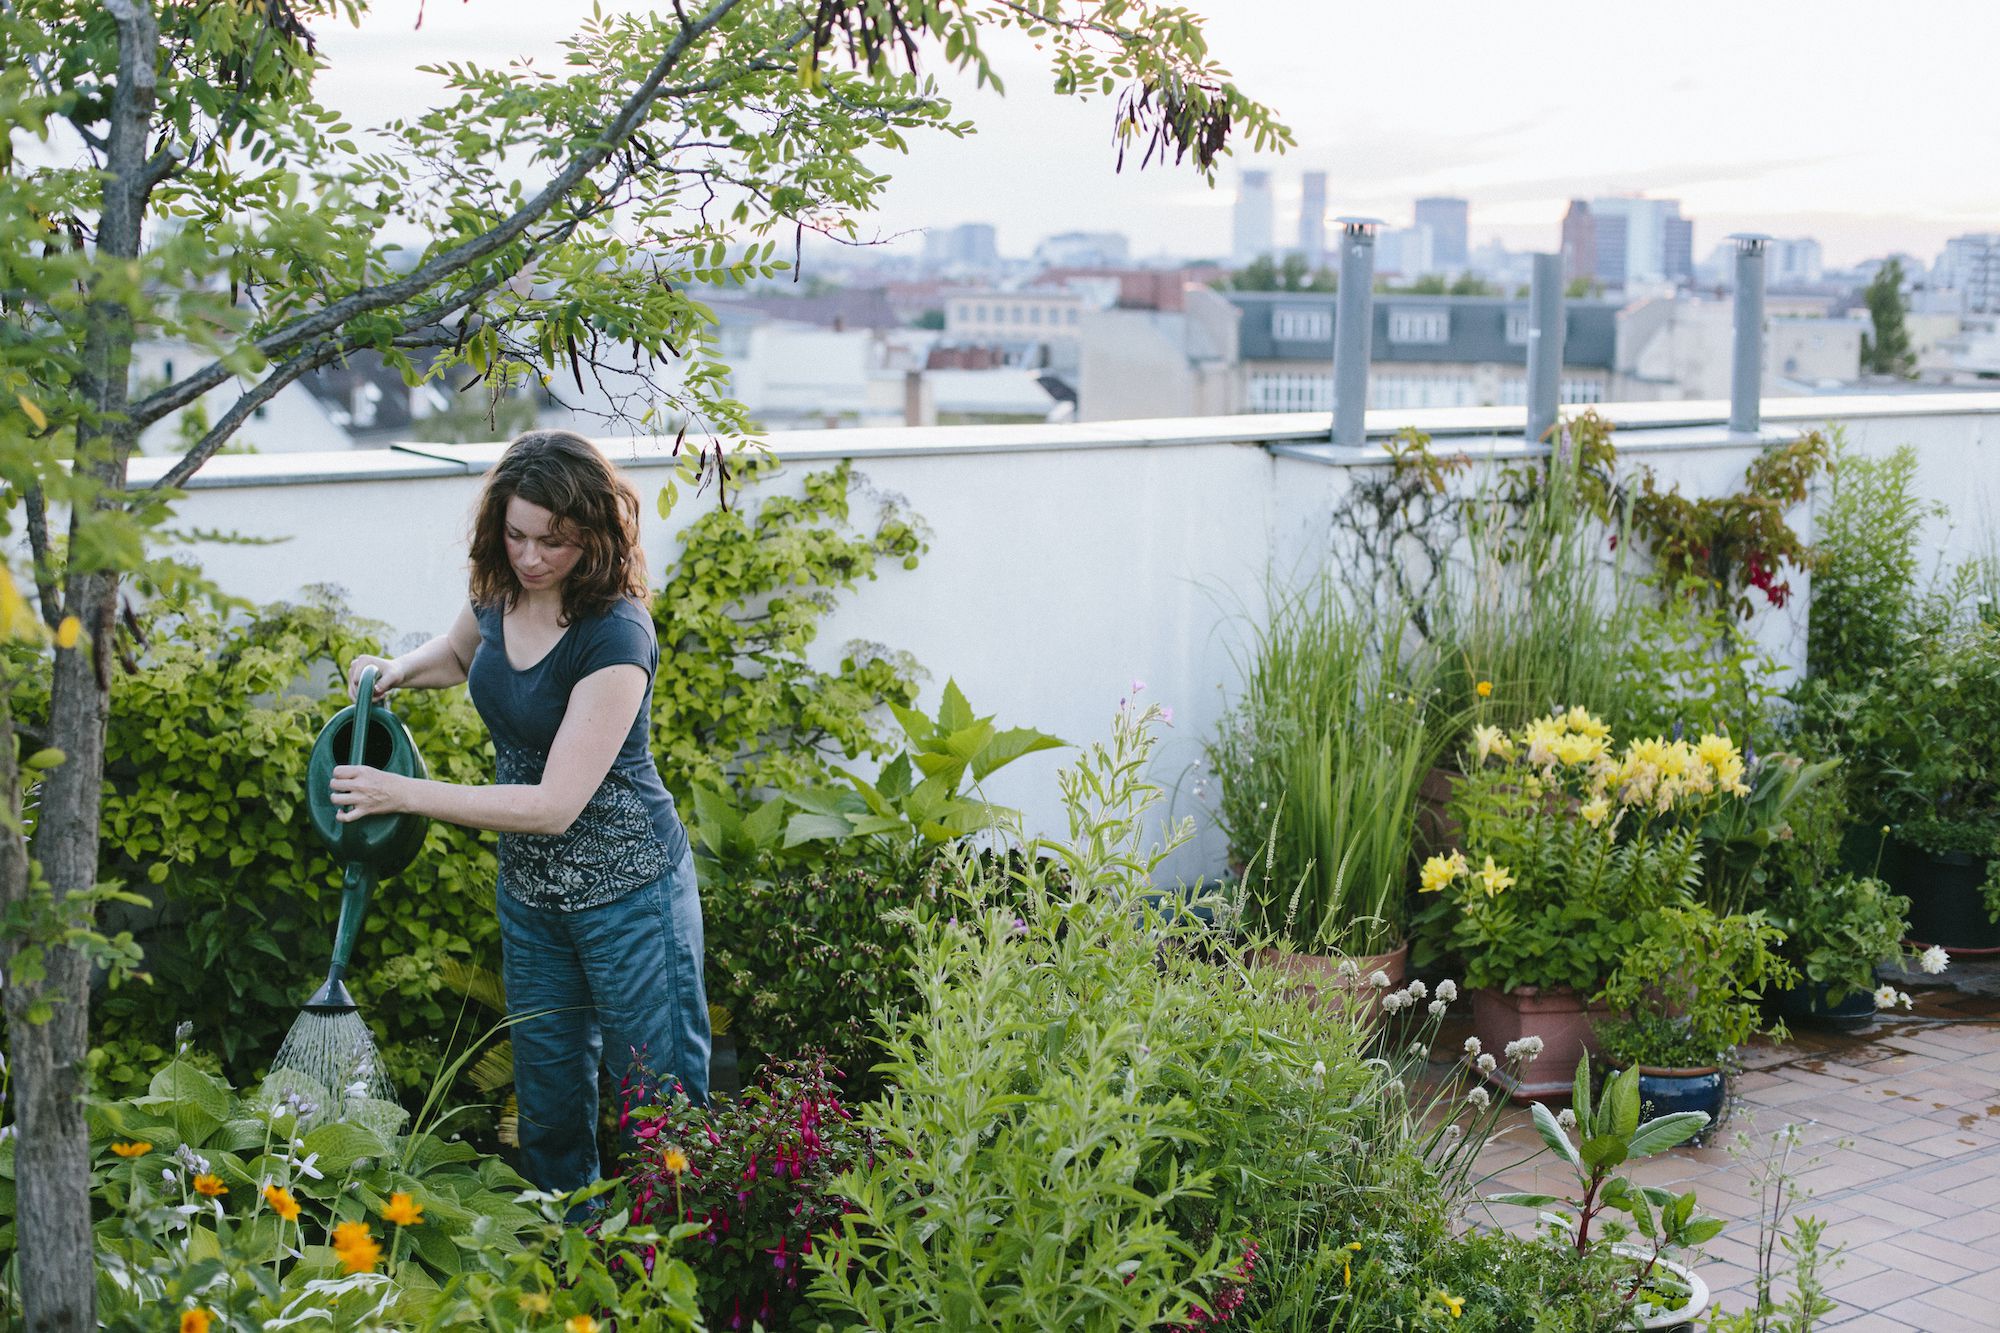 My Tips for Rooftop Garden Design